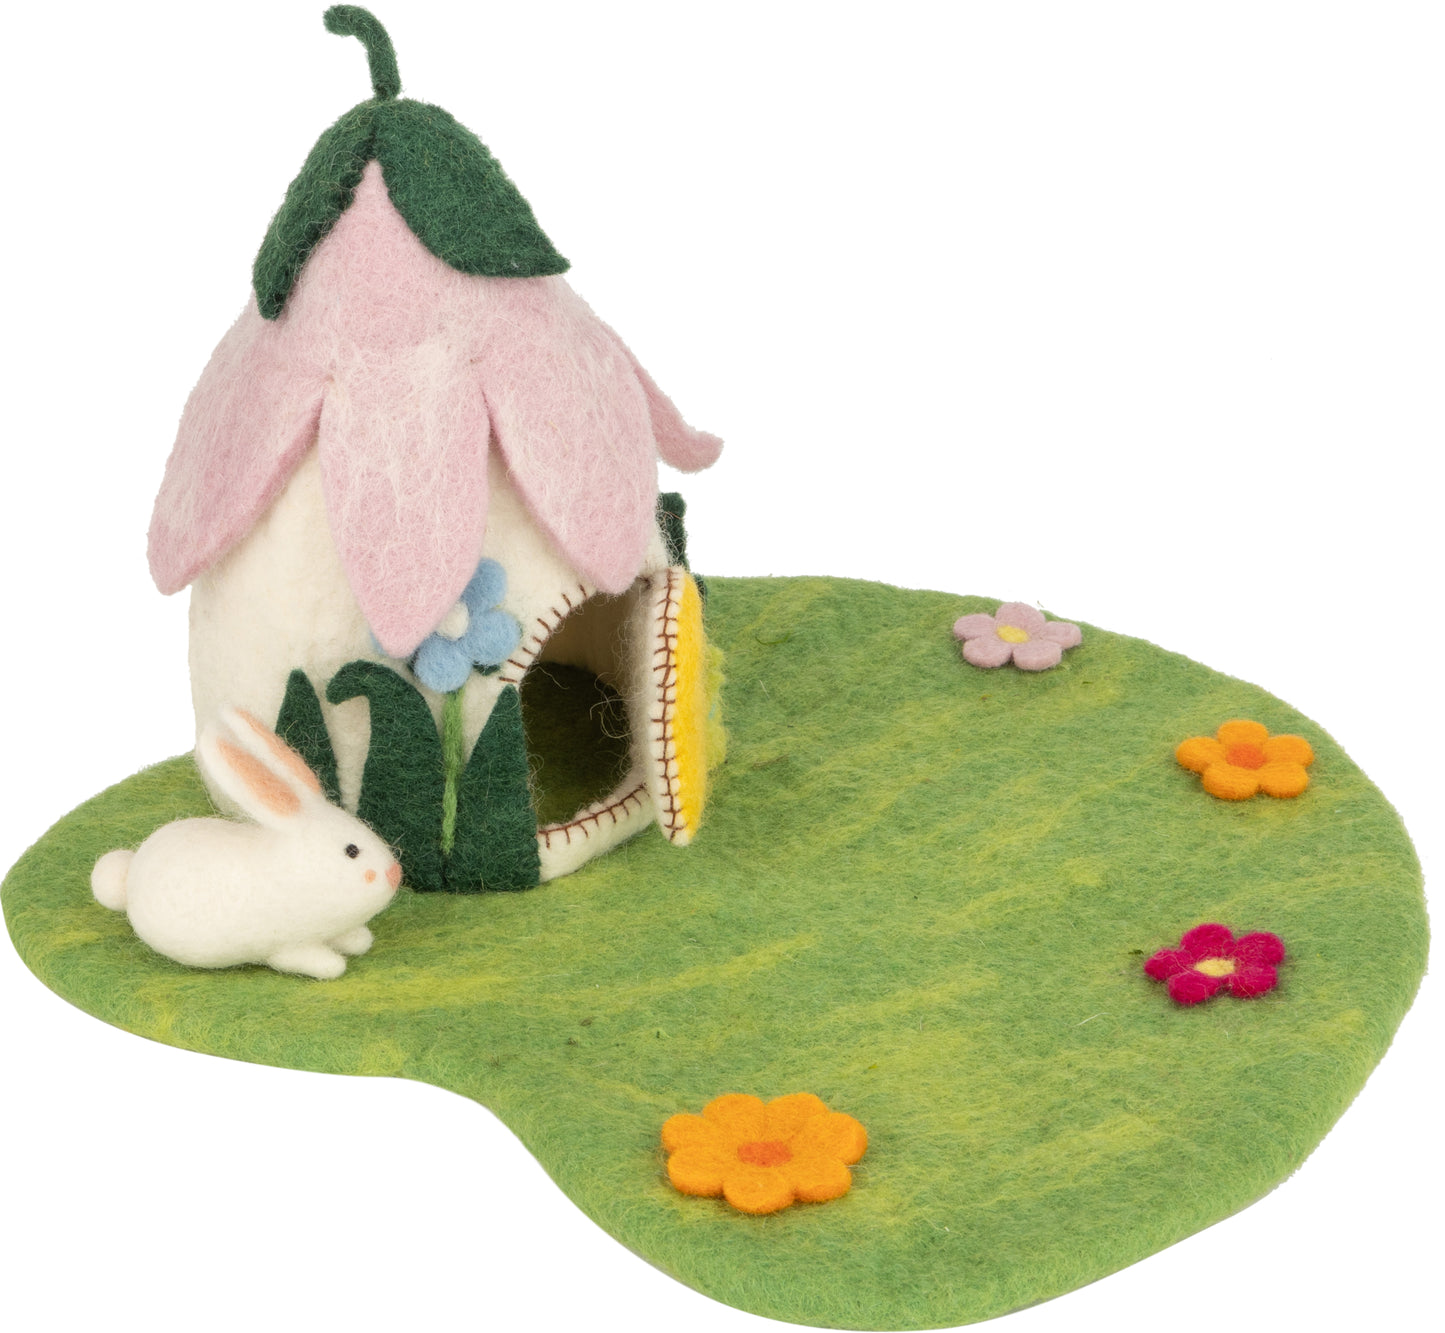 Felt Floral Fairy House on Green Felt Play Pad, Mini Bunny and Flowers